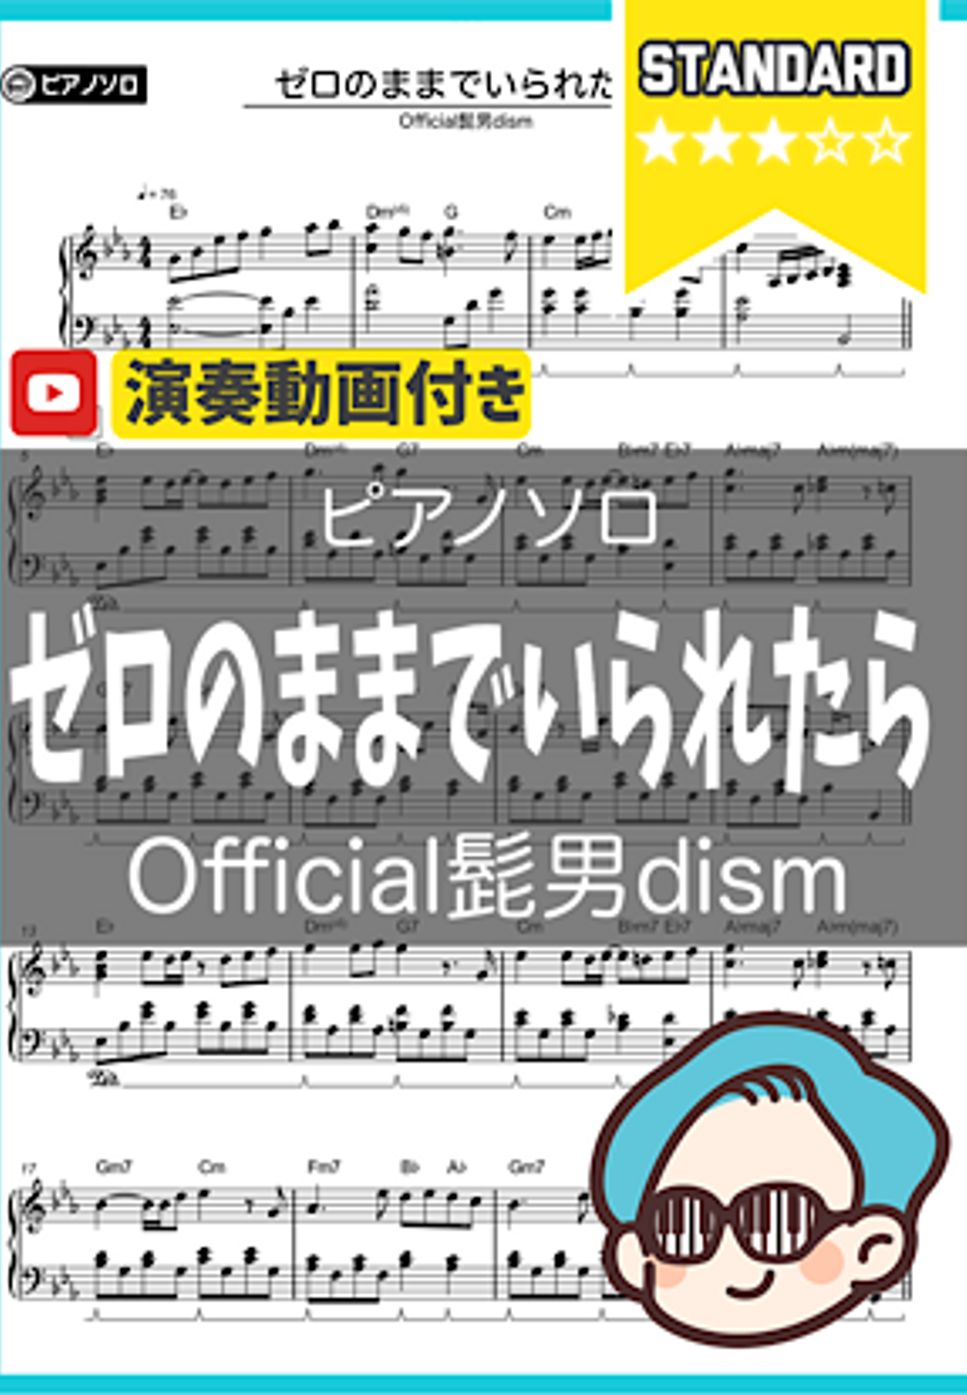 Official髭男dism - ゼロのままでいられたら by シータピアノ